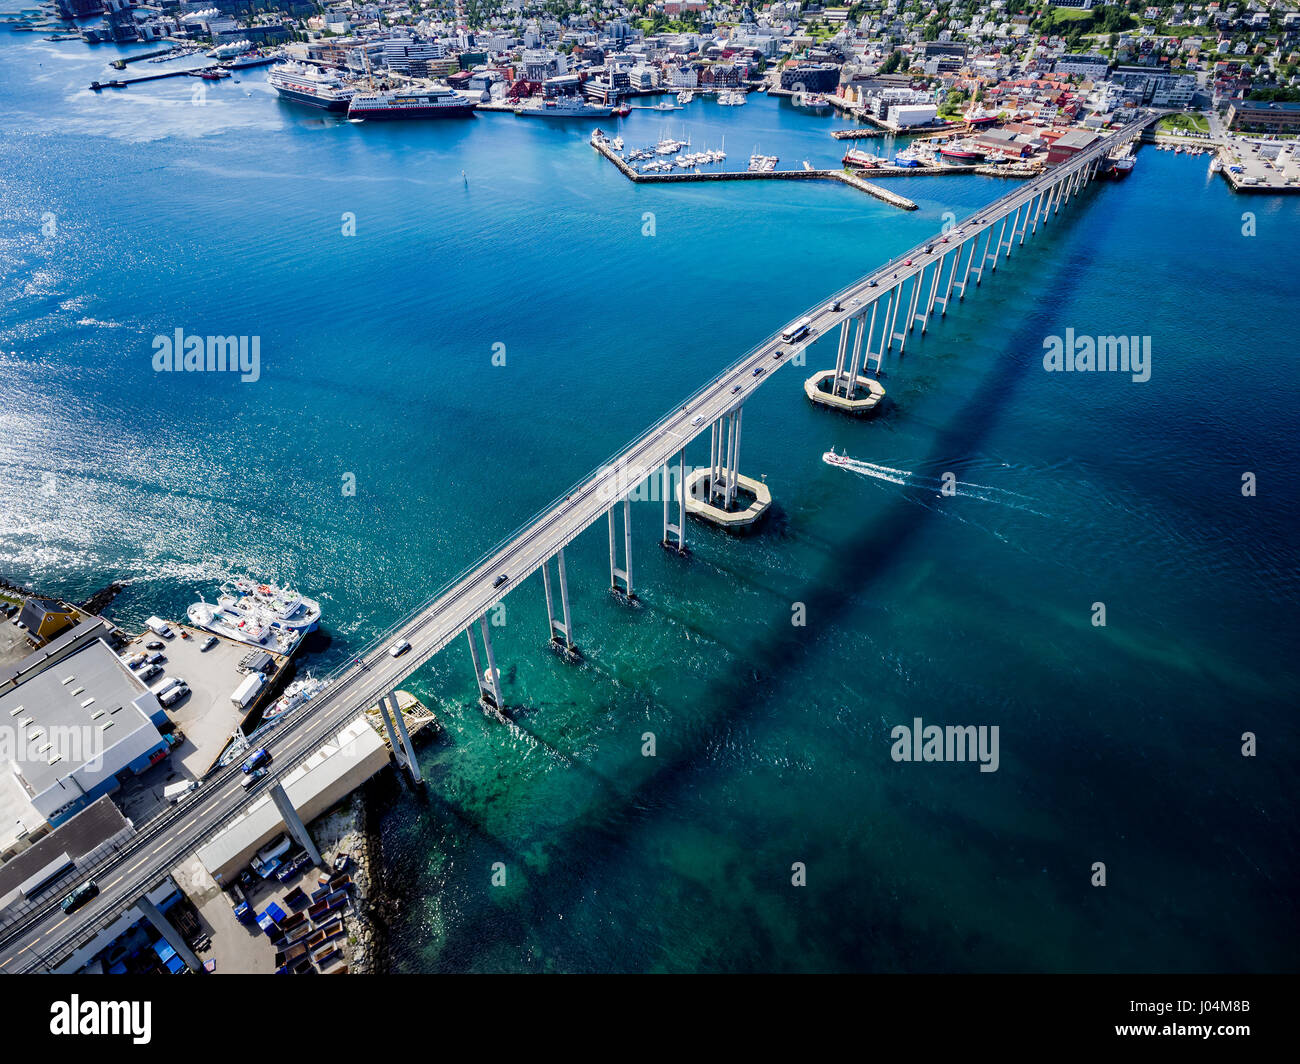 Brücke der Stadt Tromsø, Norwegen Luftaufnahmen. tromso ist die nördlichste Stadt der Welt mit einer Bevölkerung über 50.000 betrachtet. Stockfoto